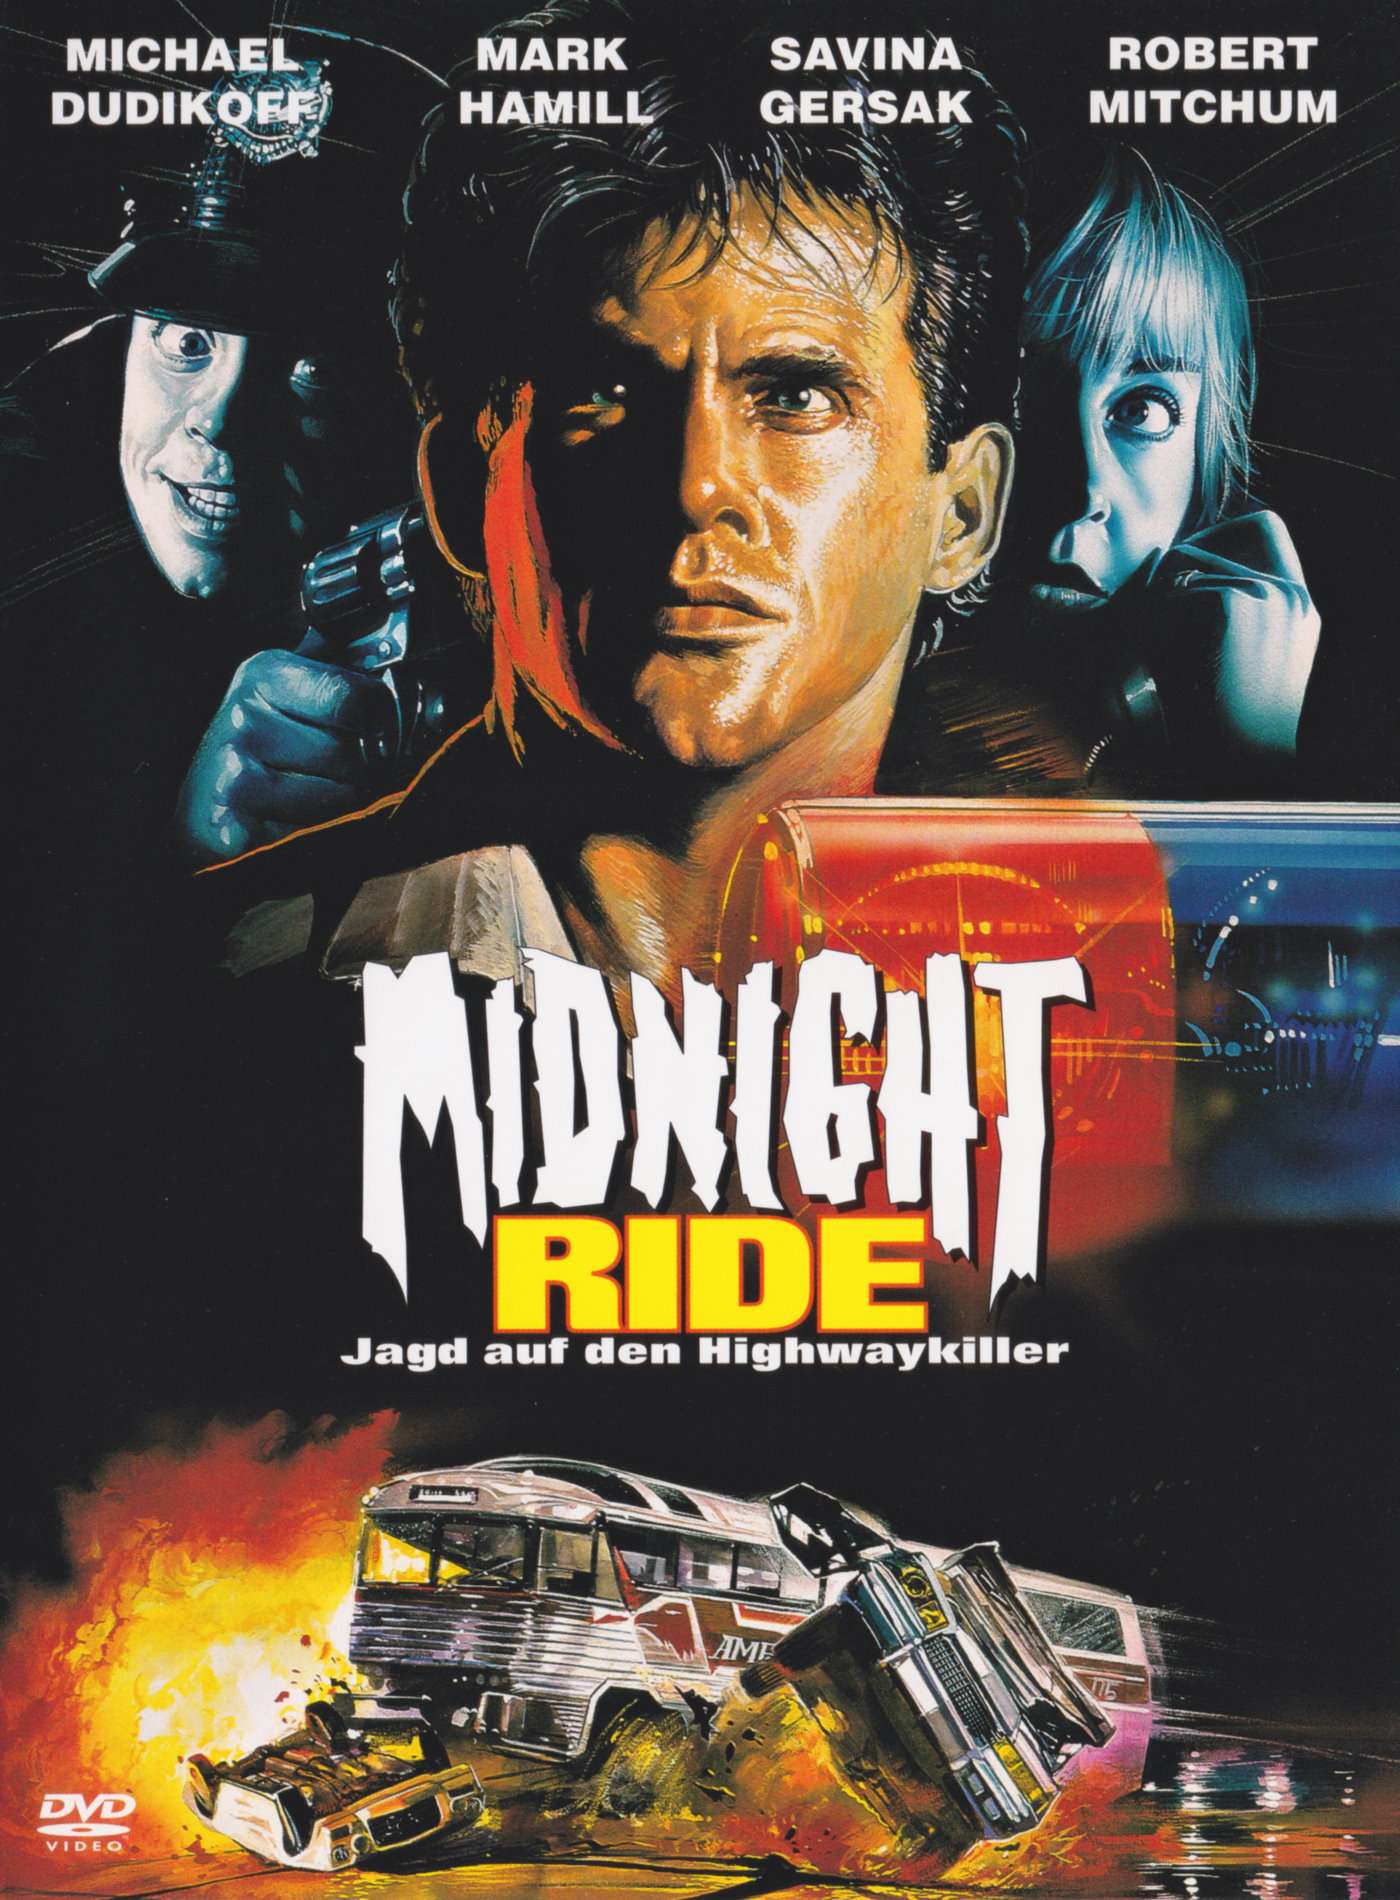 Cover - Midnight Ride - Jagd auf den Highwaykiller.jpg